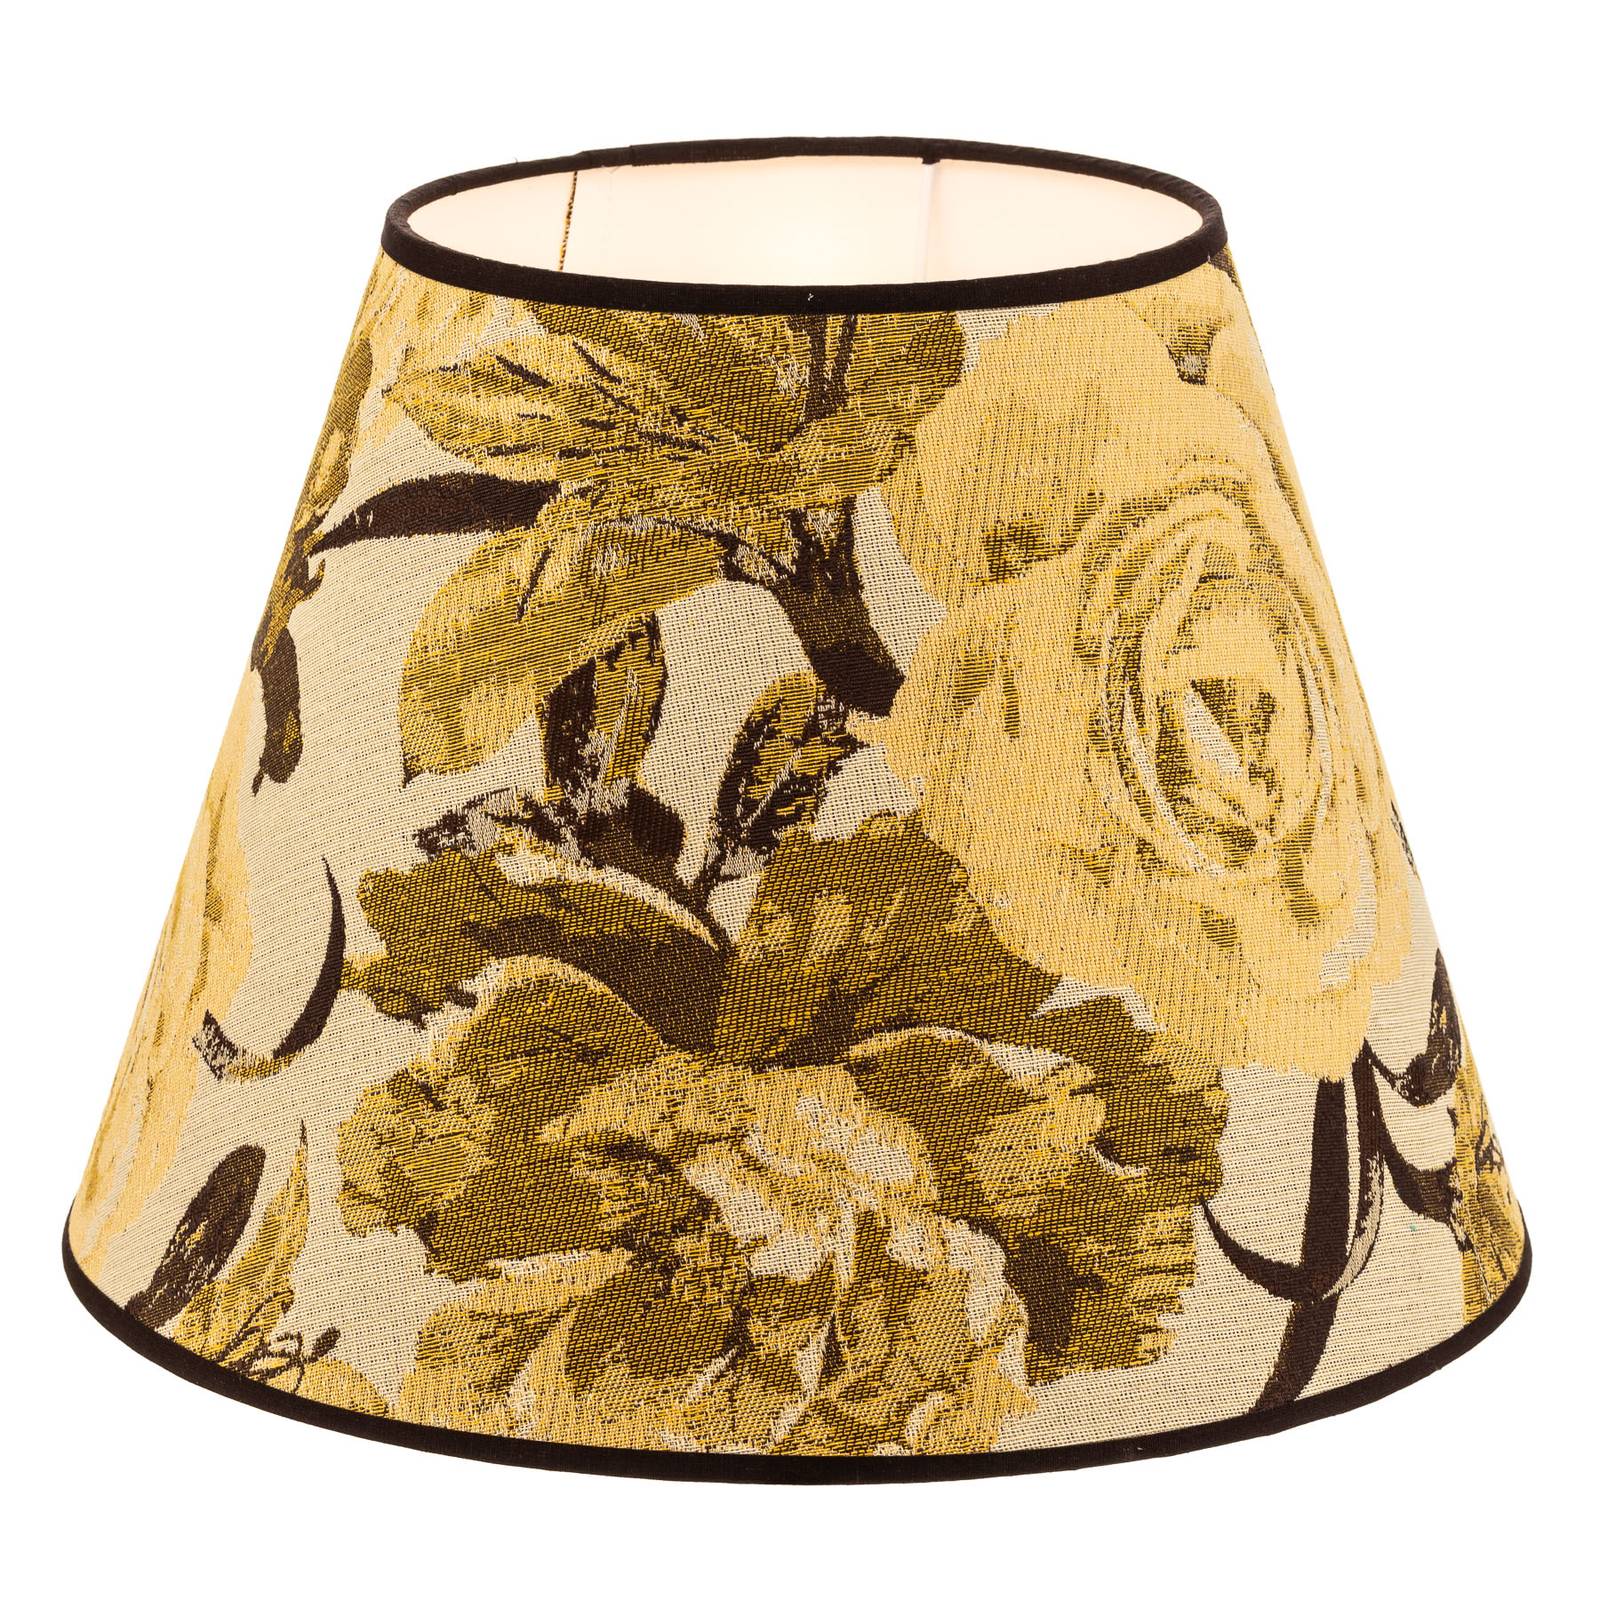 Sofia lámpaernyő 26 cm magas, virágmintás sárga